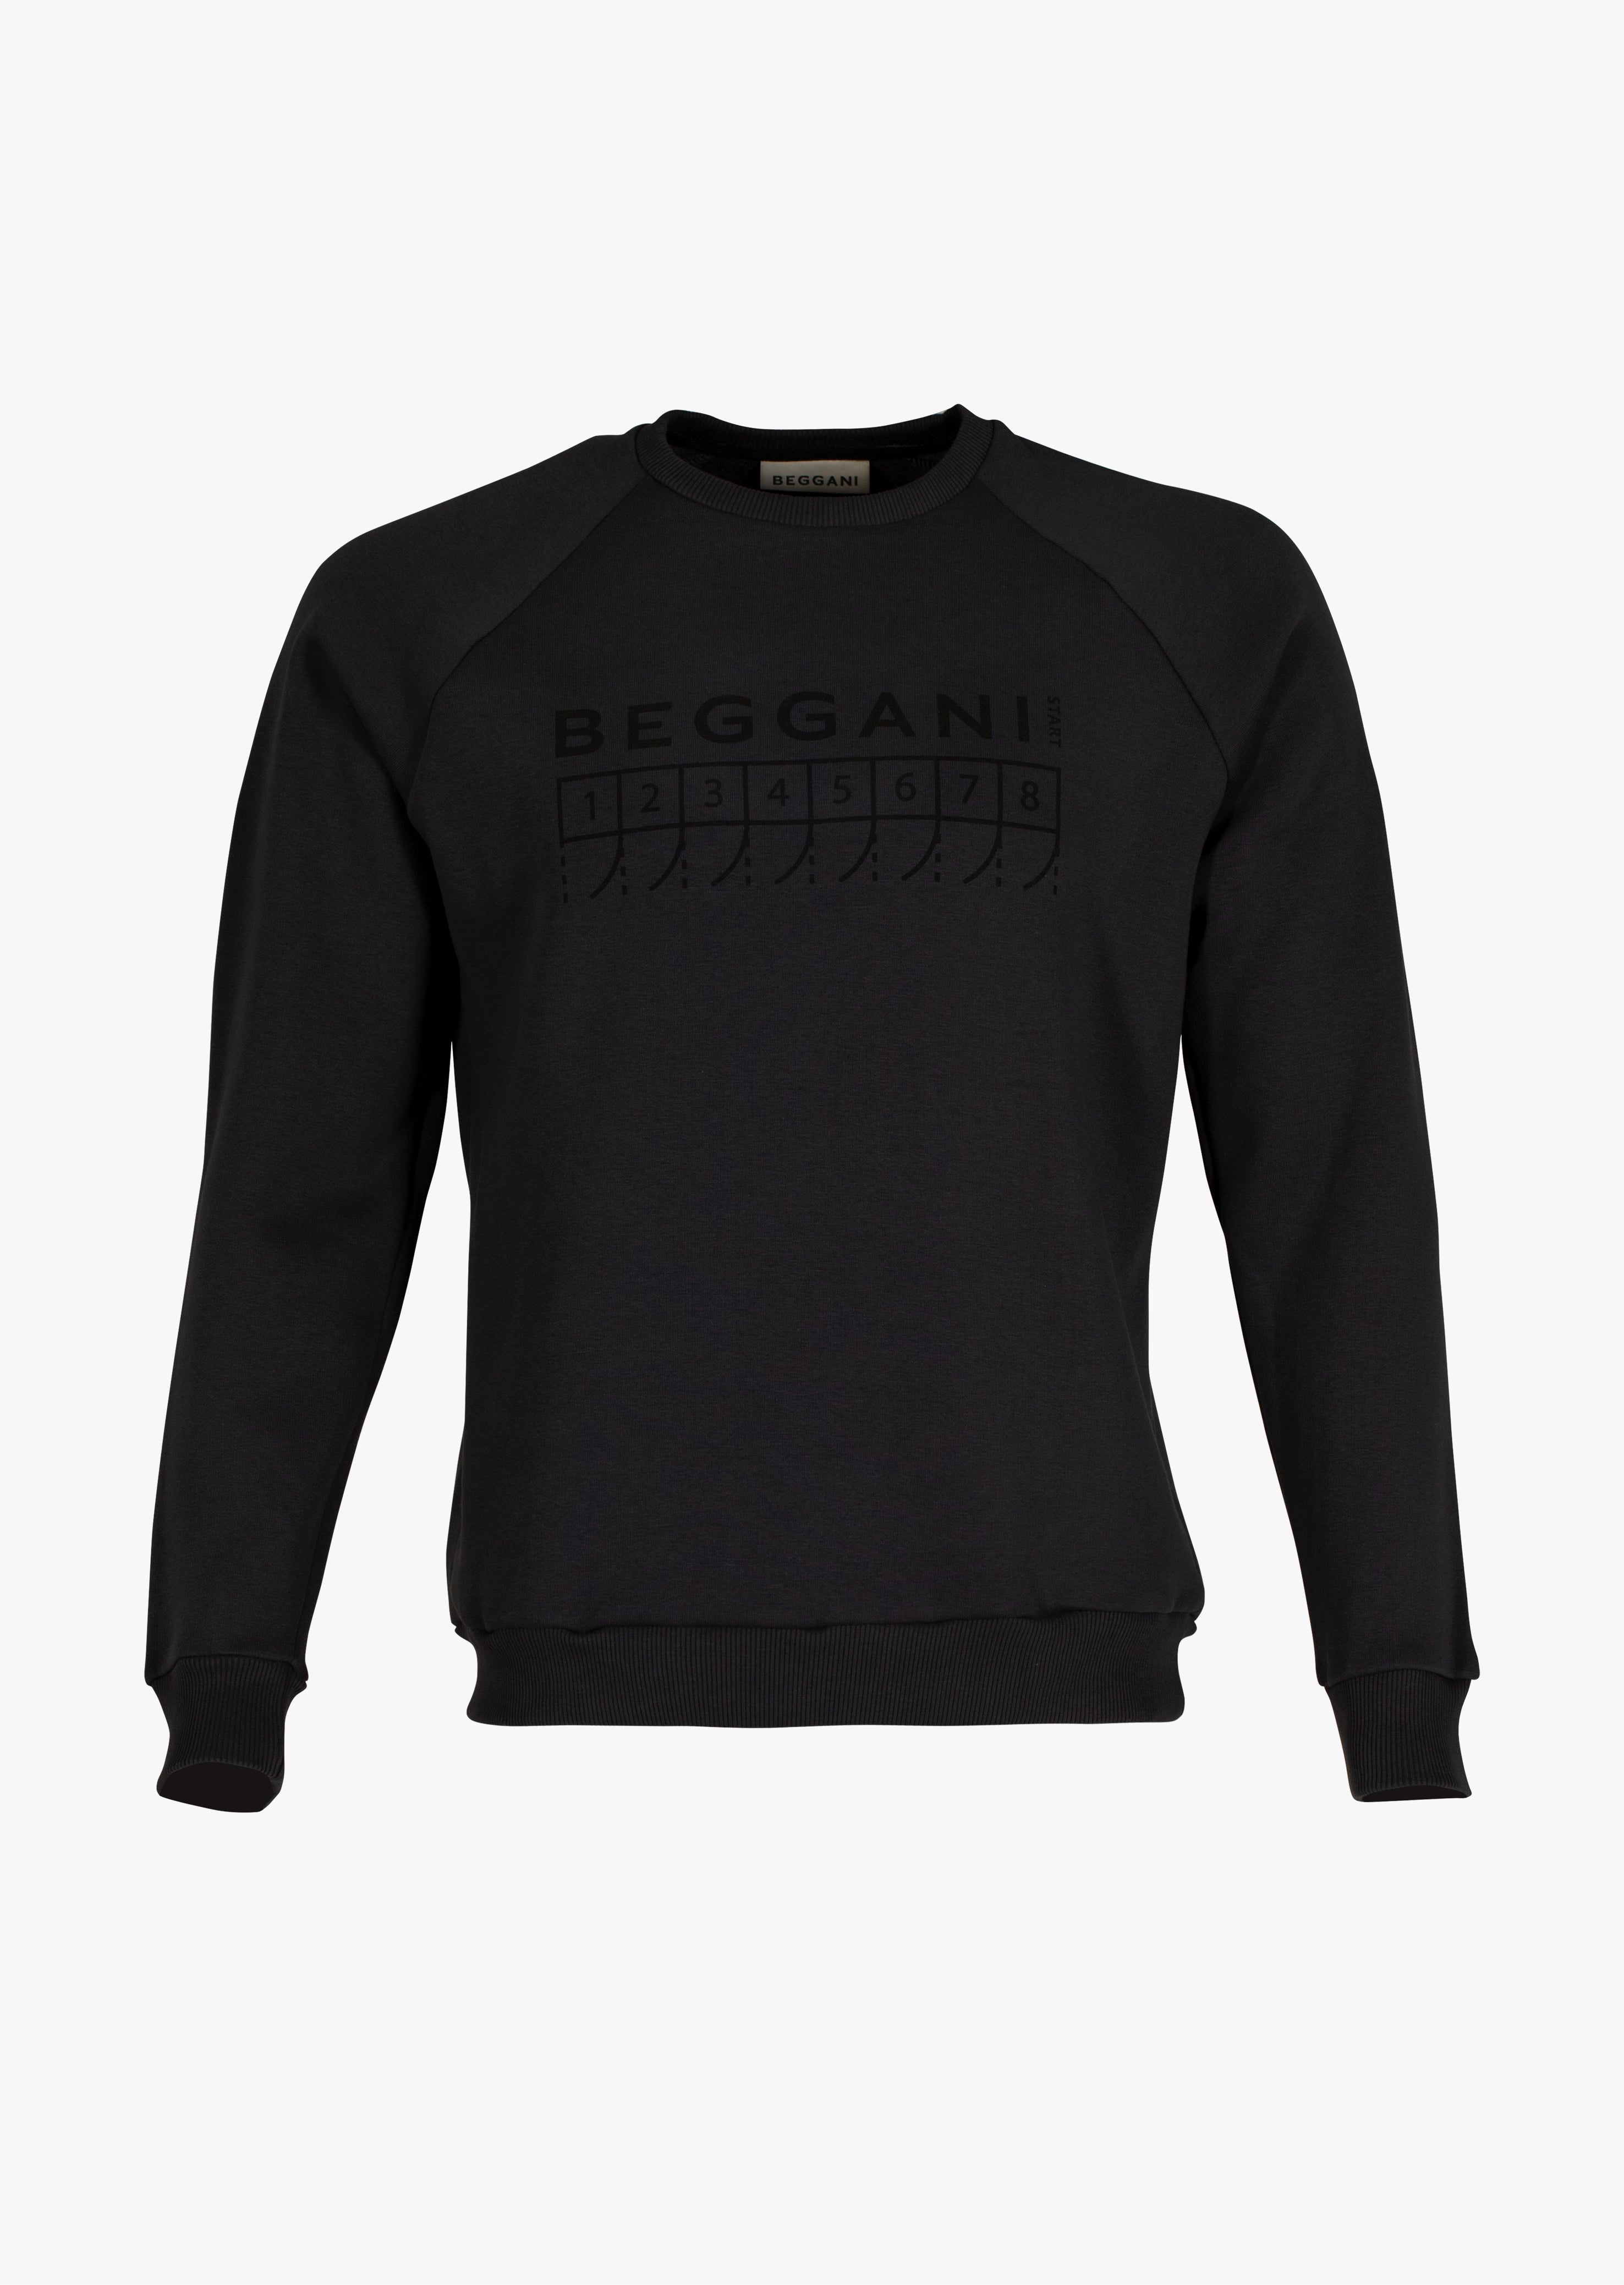 Men's BEGGANI starting sweatshirt